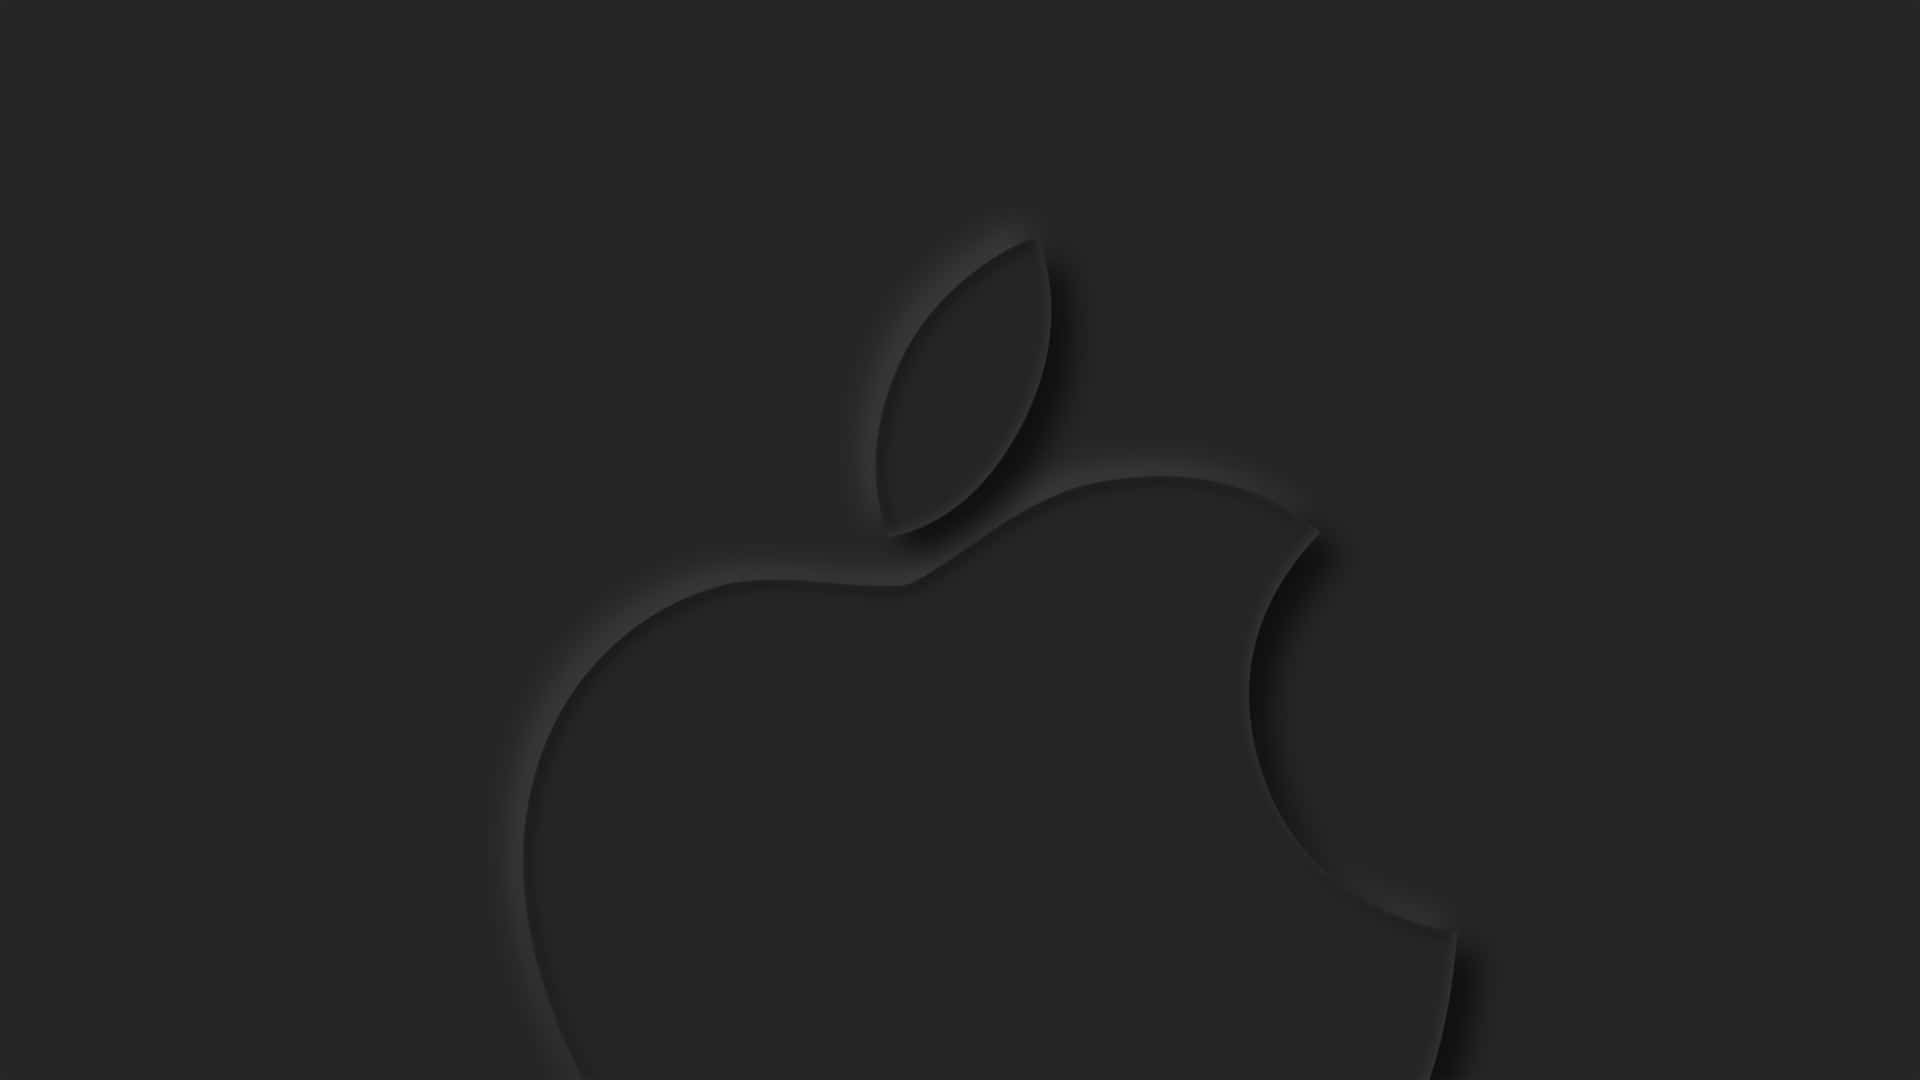 Logotipode Apple En Negro. Fondo de pantalla